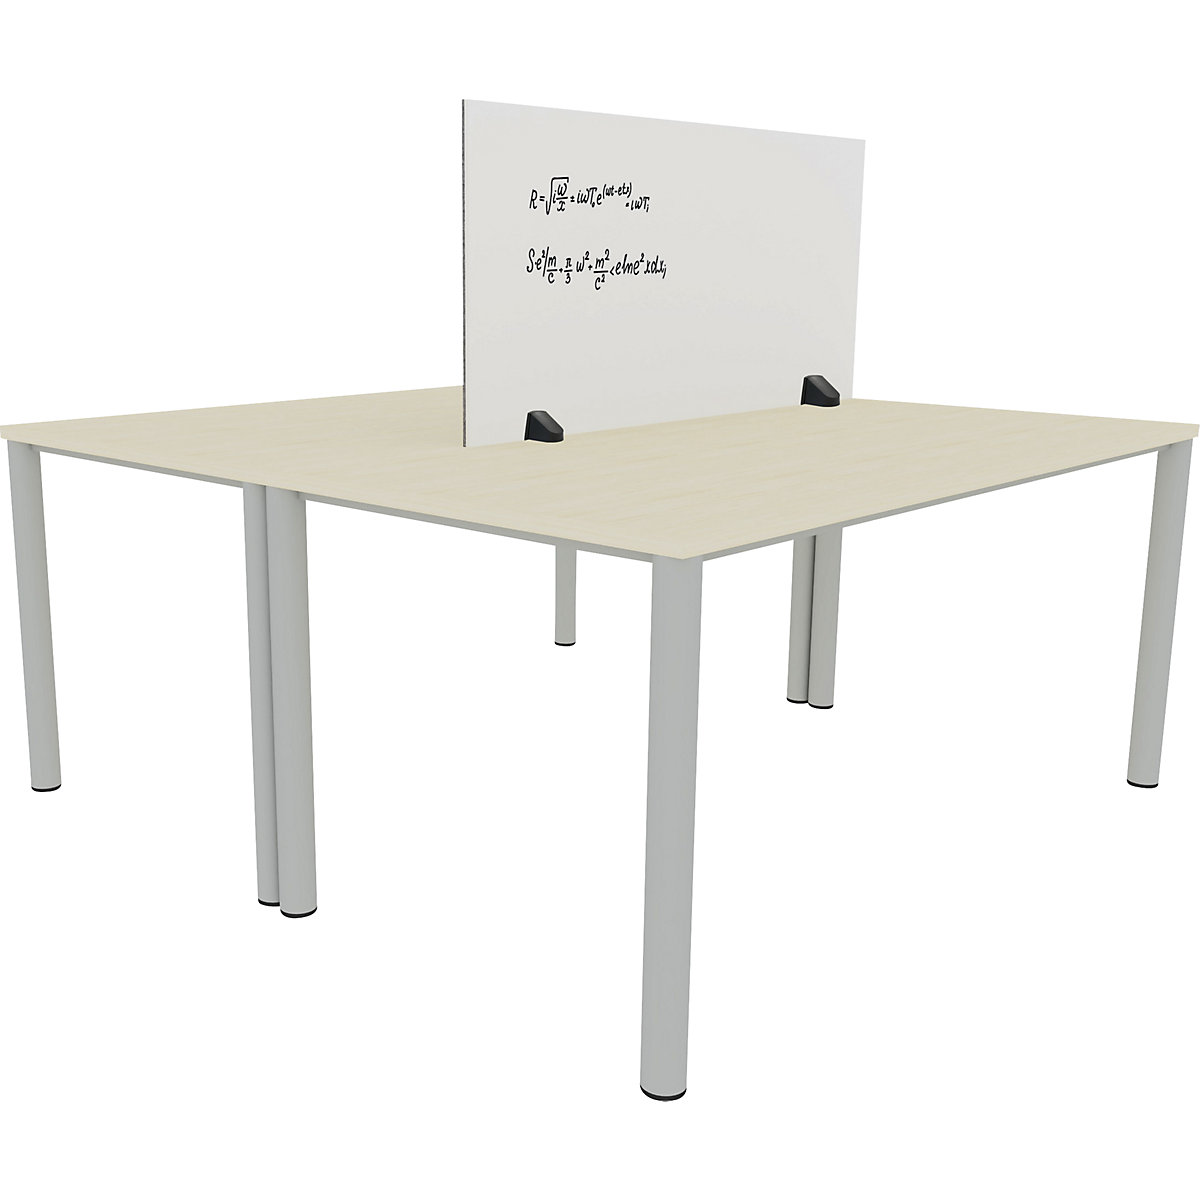 Tischtrennwand für Doppelarbeitsplatz, Emaille- und PET-Filz-Oberfläche, weiß / grau, Breite 1200 mm-3